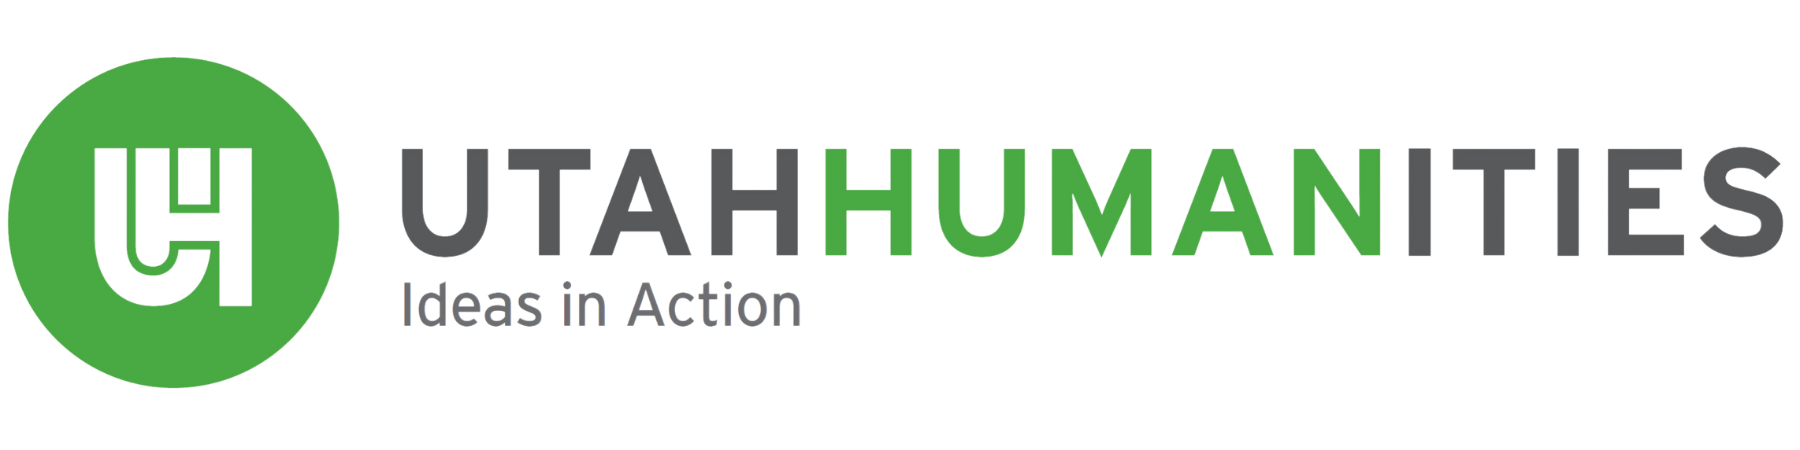 Utah Humanities Logo